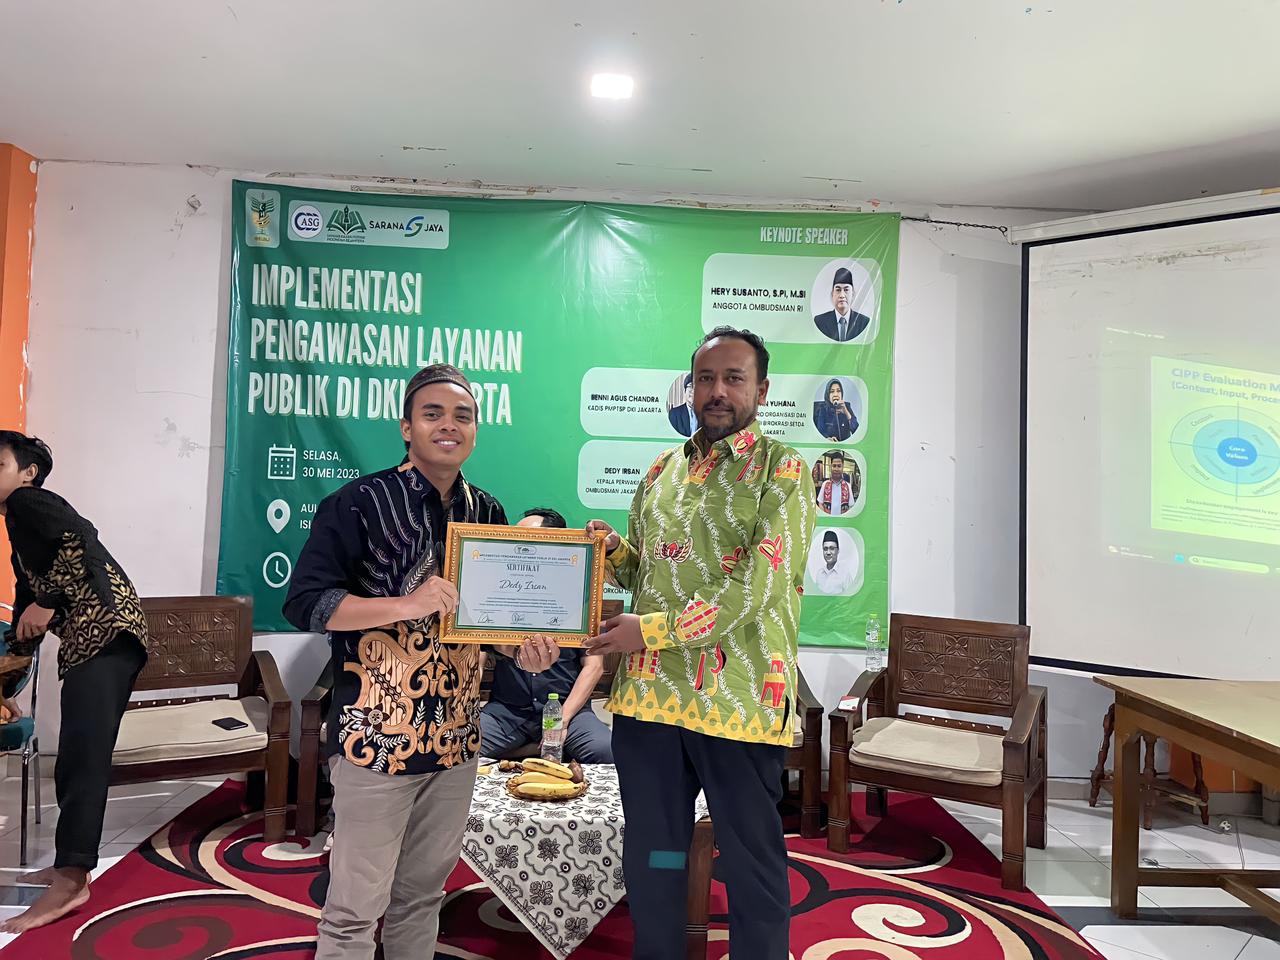 ASG Adakan Diskusi Kolaboratif dengan HMI bertajuk “Implementasi Pengawasan Layanan Publik di DKI Jakarta” dengan mengundang Ombudsman